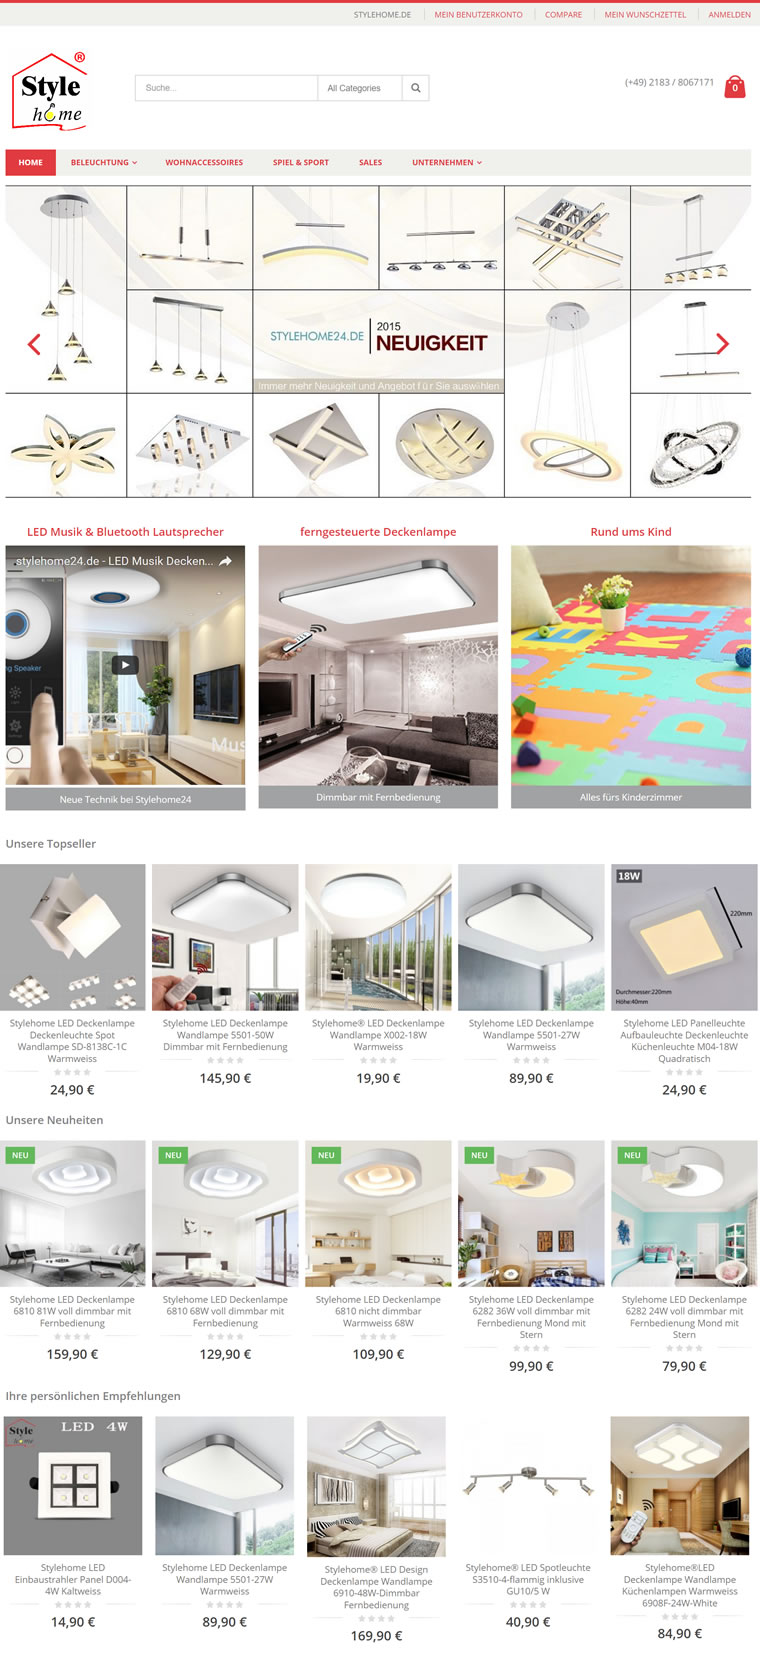 德國低價購買燈具和傢具網站：Style-home.de 德國購物網站 MeetKK-MeetKK